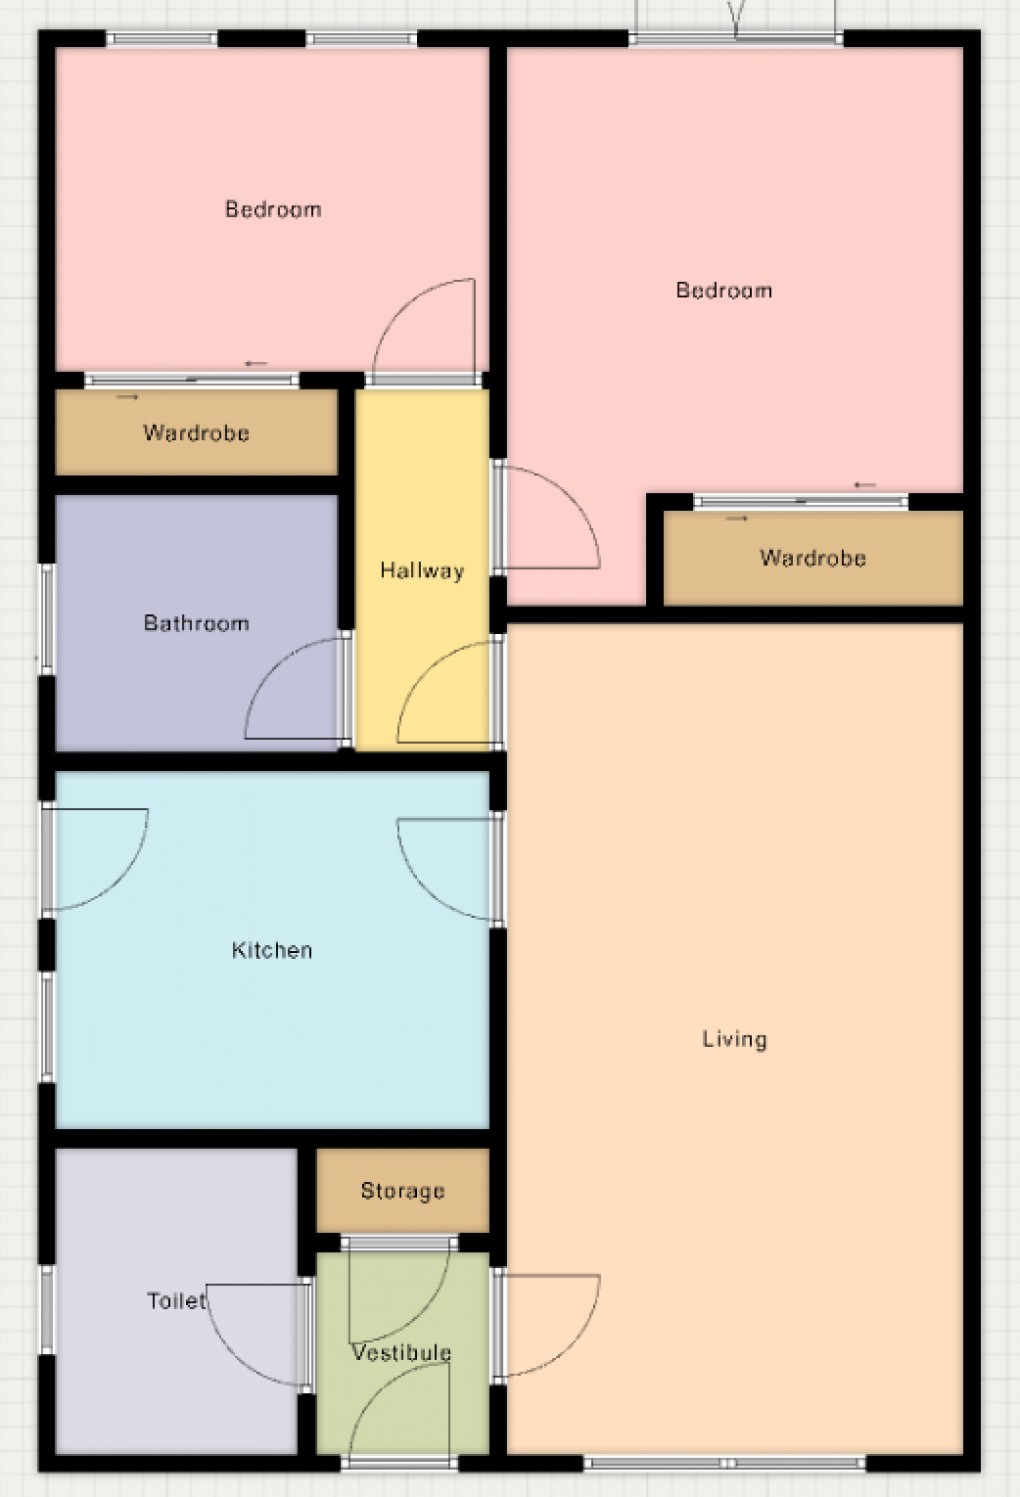 Floorplan for 62 Dalnabay, Silverglades, Aviemore